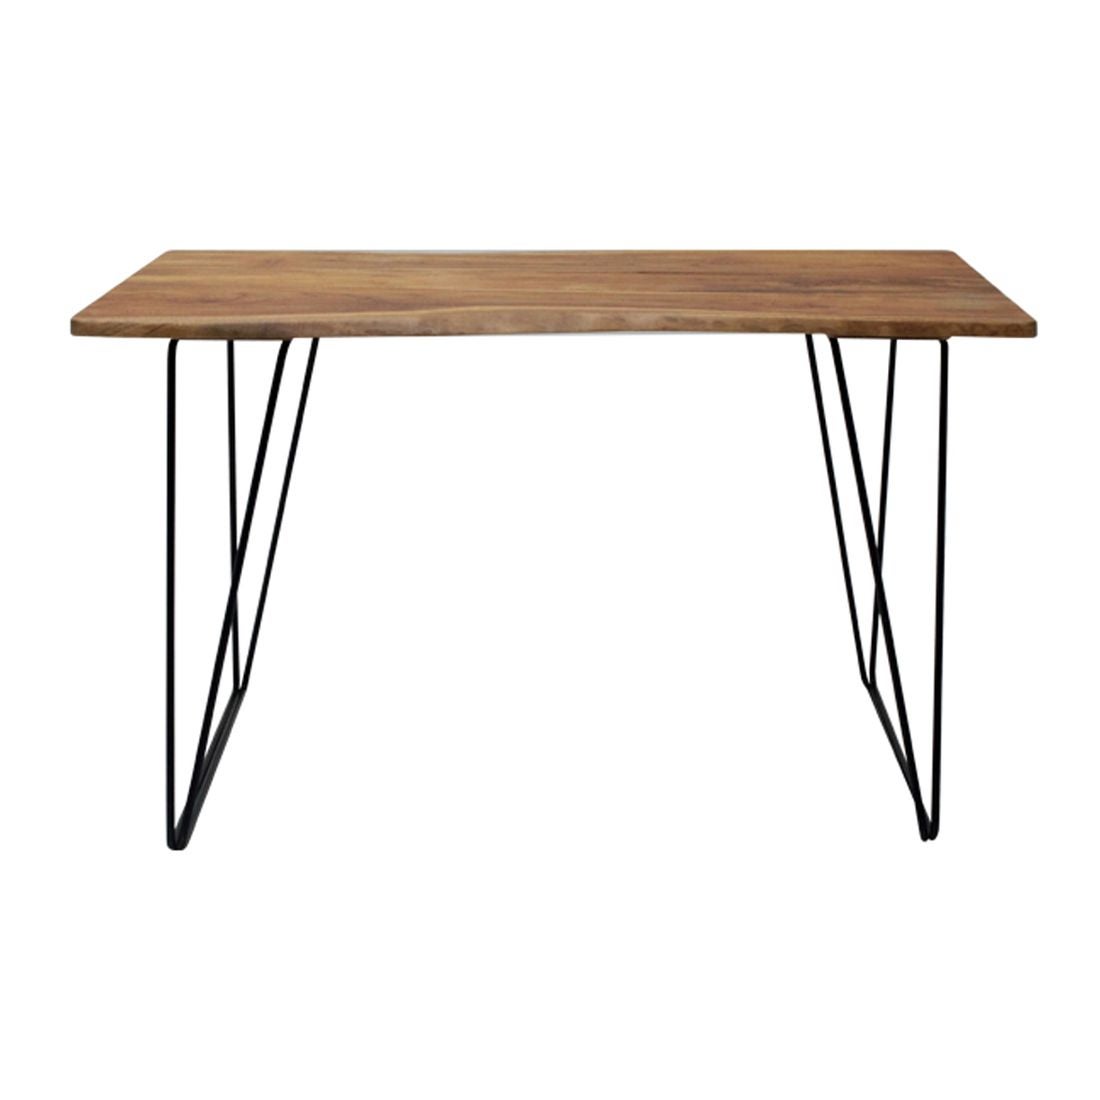 โต๊ะทานอาหาร โต๊ะอาหารขาเหล็กท๊อปไม้ รุ่น Fer สีสีลายไม้ธรรมชาติ-SB Design Square